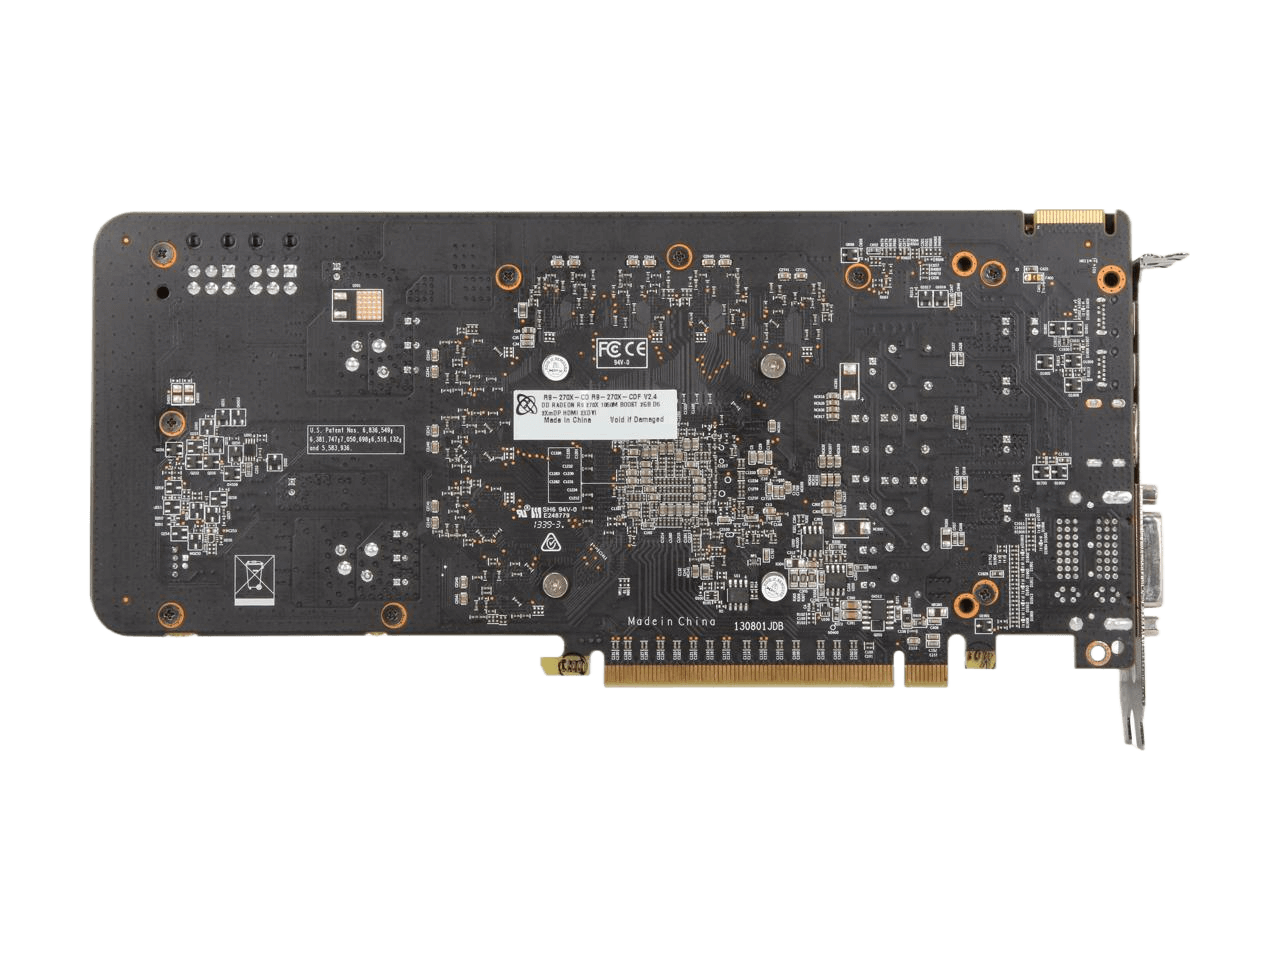 XFX Double D Radeon R9 270X 2GB GDDR5 PCI Express 3.0 x16 Video Card R9-270X-CDFC